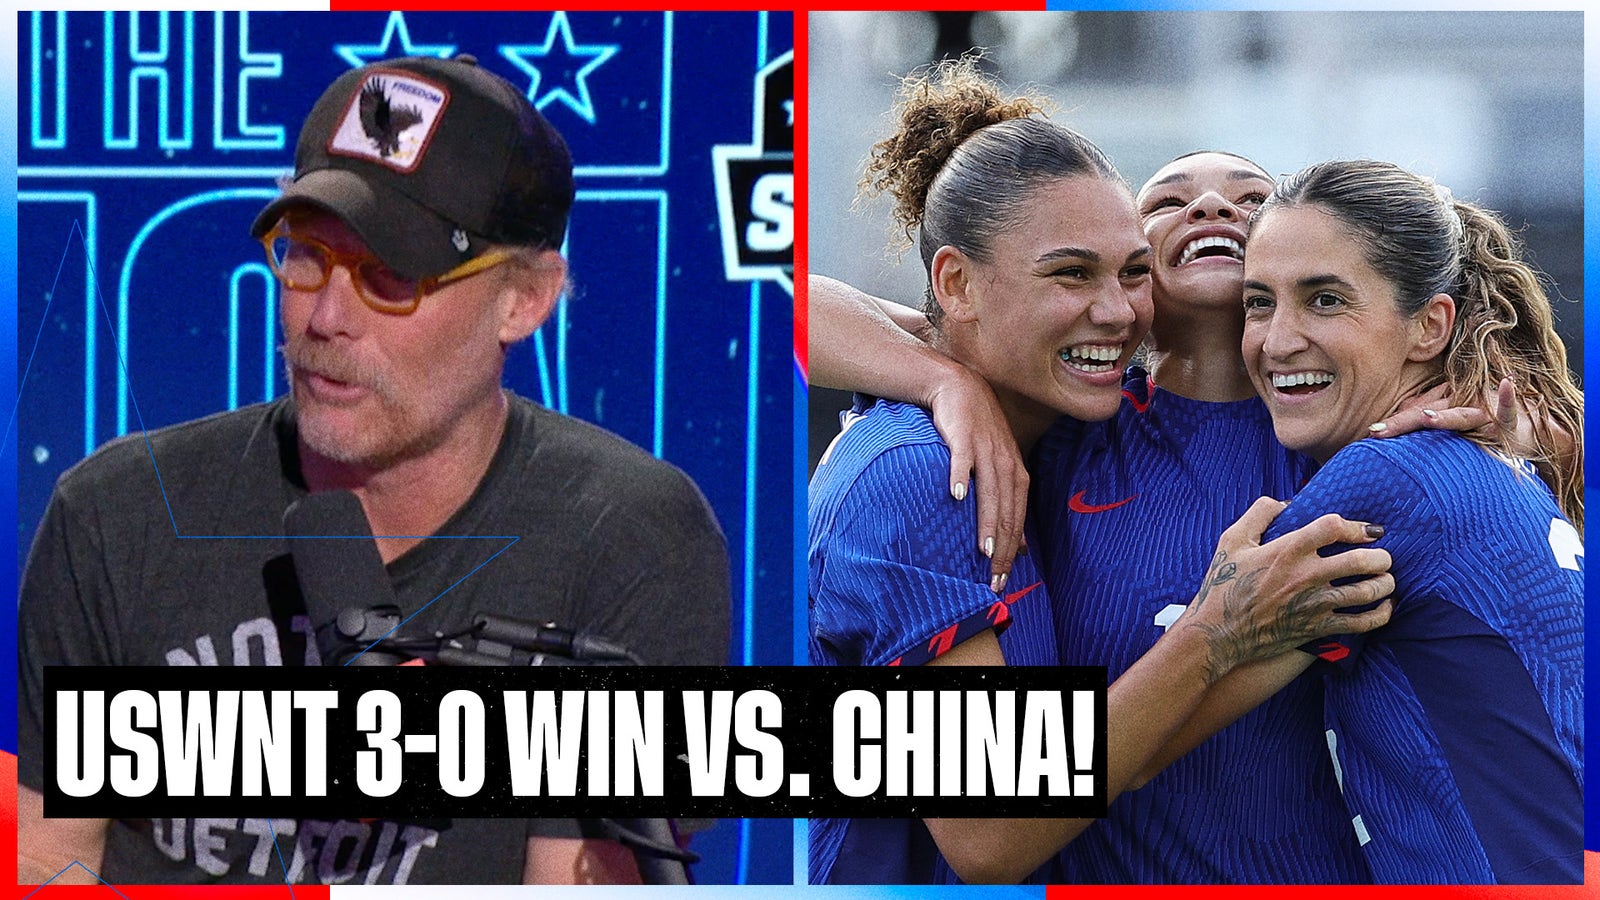 USWNT beat China 3-0, as the Emma Hayes era begins